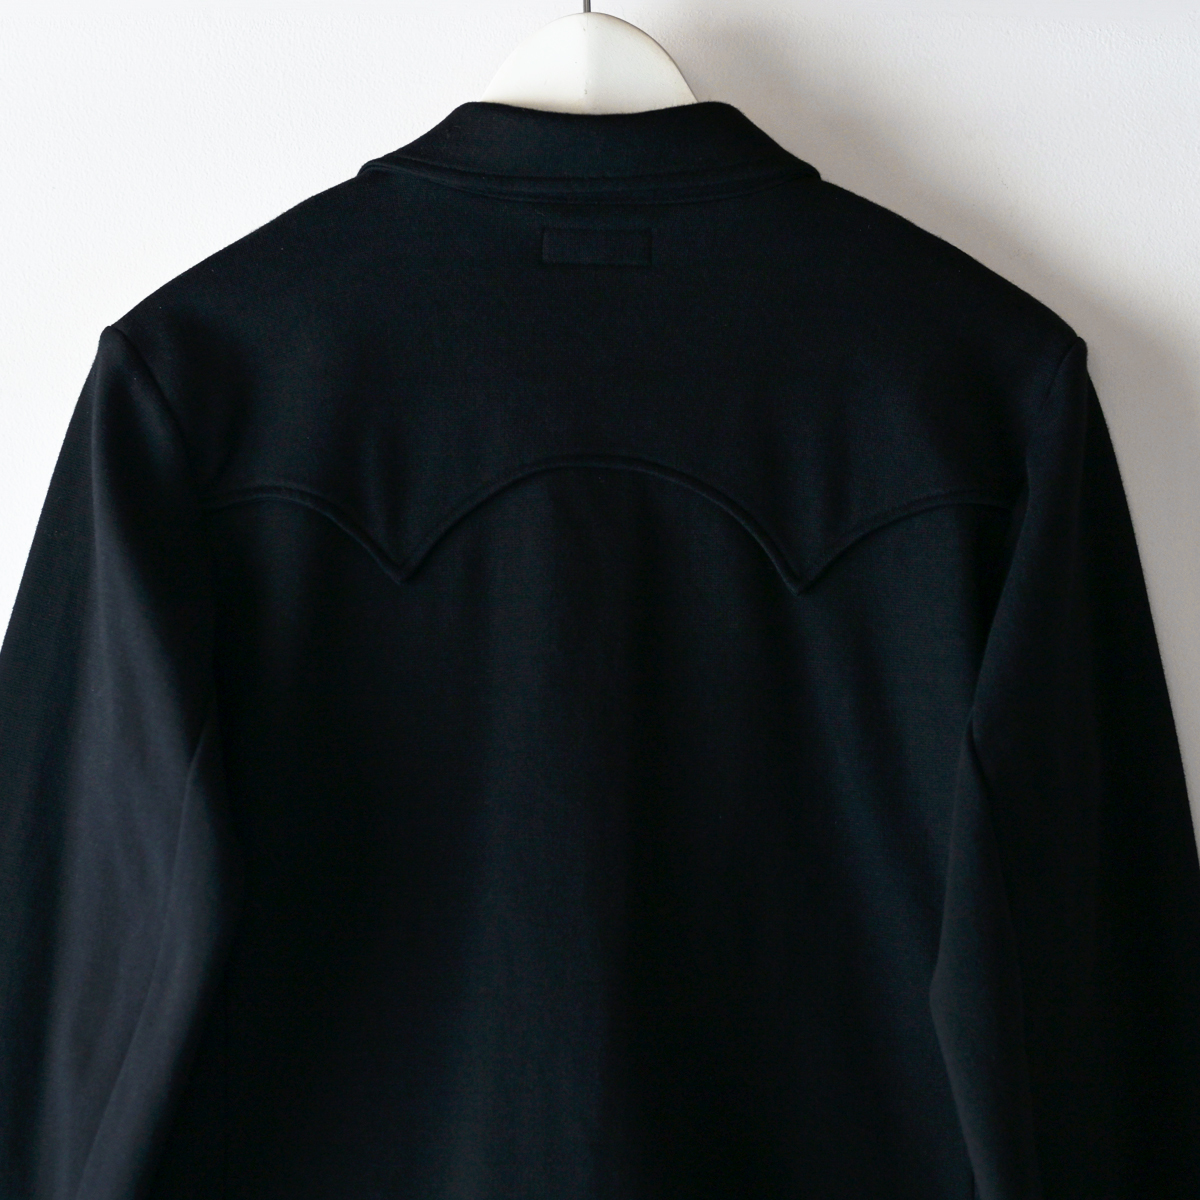 美品 90s agnes b アニエスベー ウエスタン テーラードジャケット サイズ1 ブラック 黒 コンチョボタン バックヨーク / ヴィンテージ_画像4